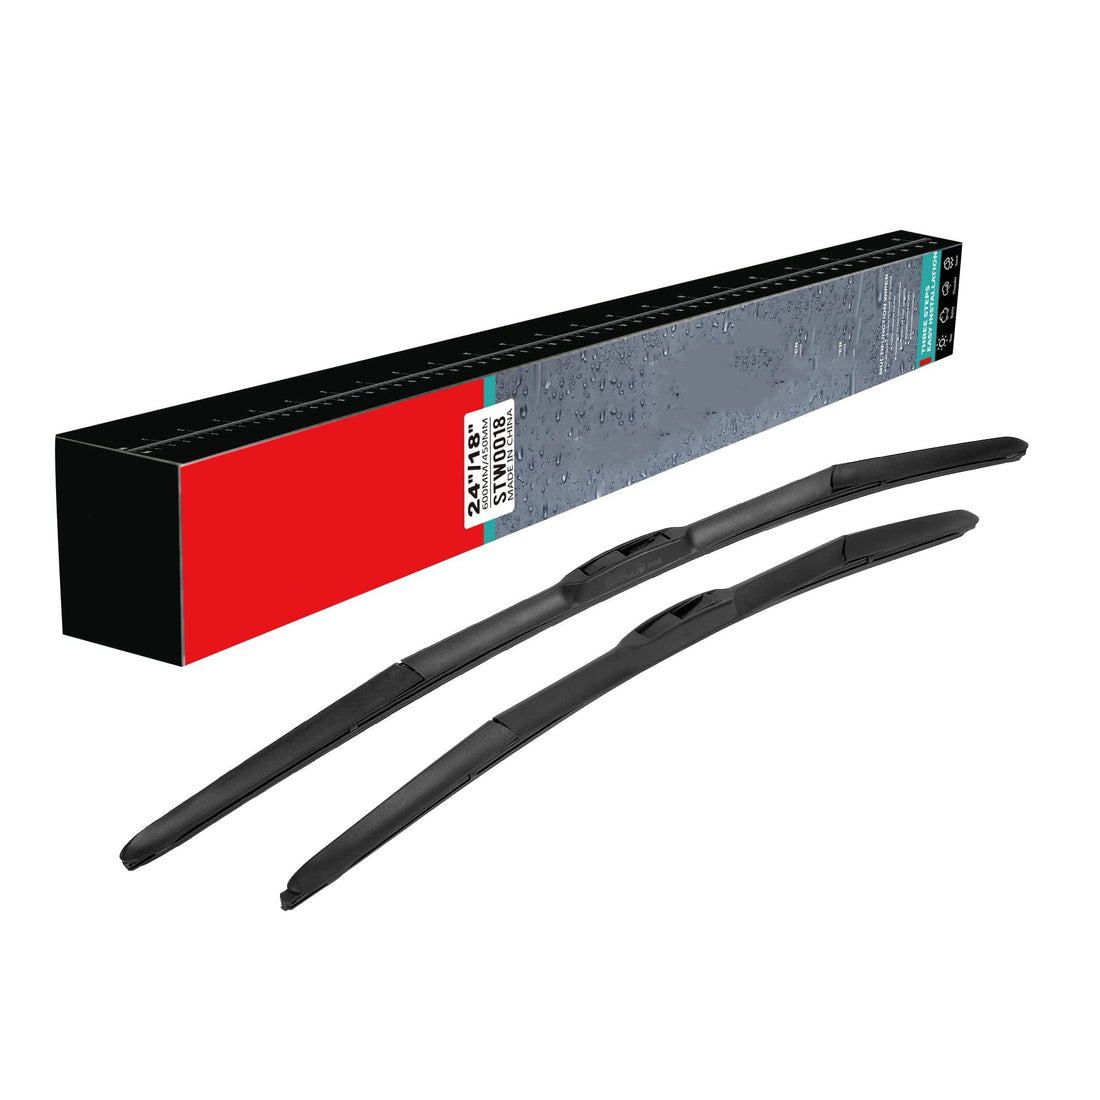 26" & 16" Premium Rubber Wiper Blades - Quiet & Durable